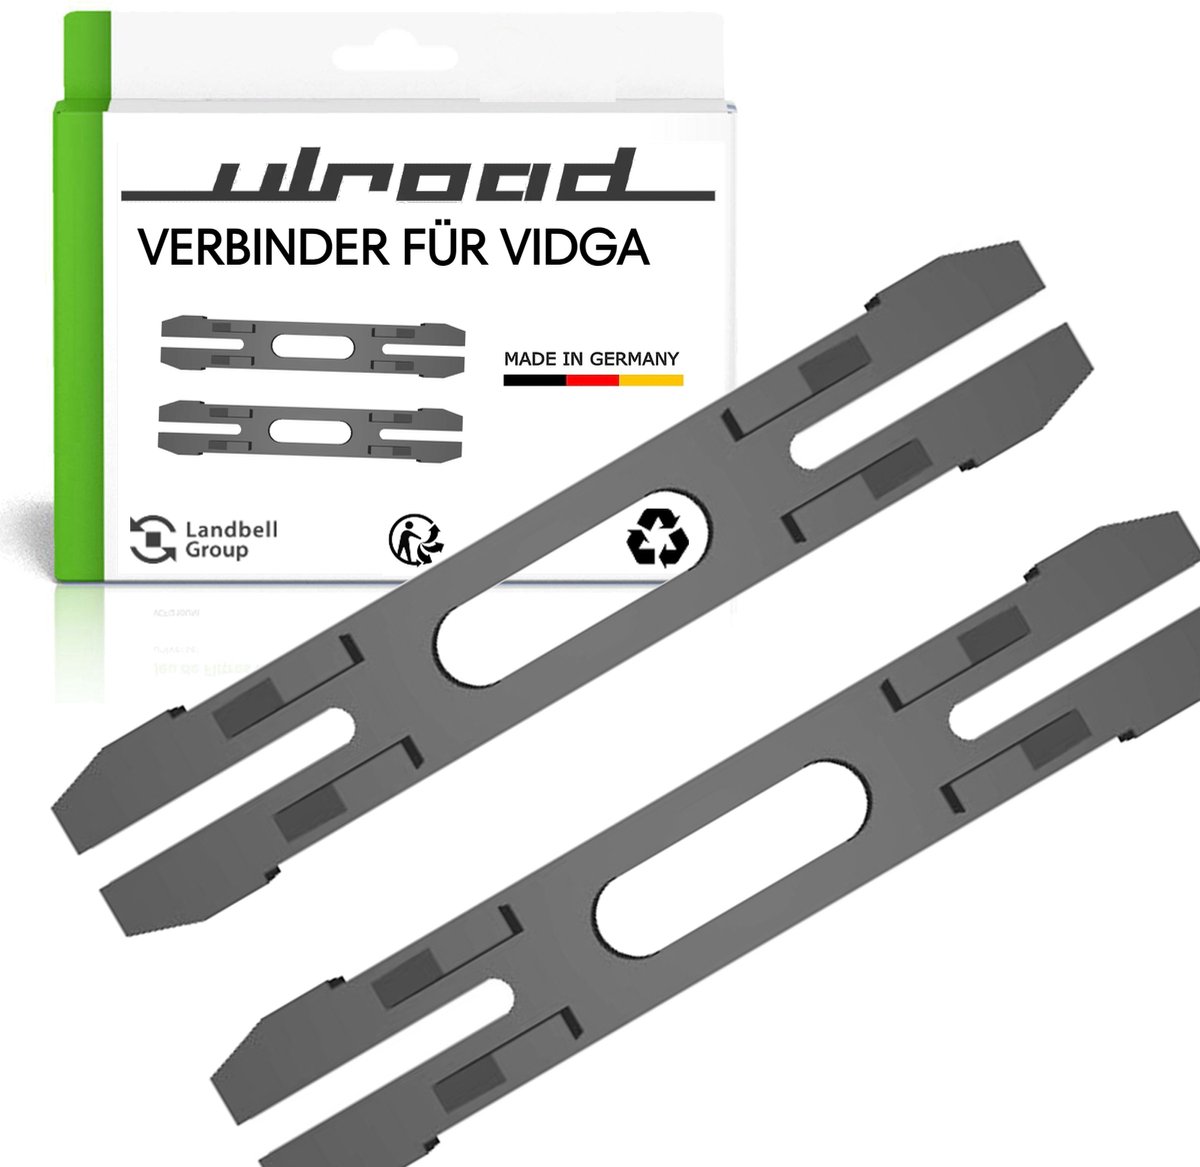 ULROAD 2x verbindingsstuk geschikt voor IKEA VIDGA voor gordijnrail geleiderail rail gordijn